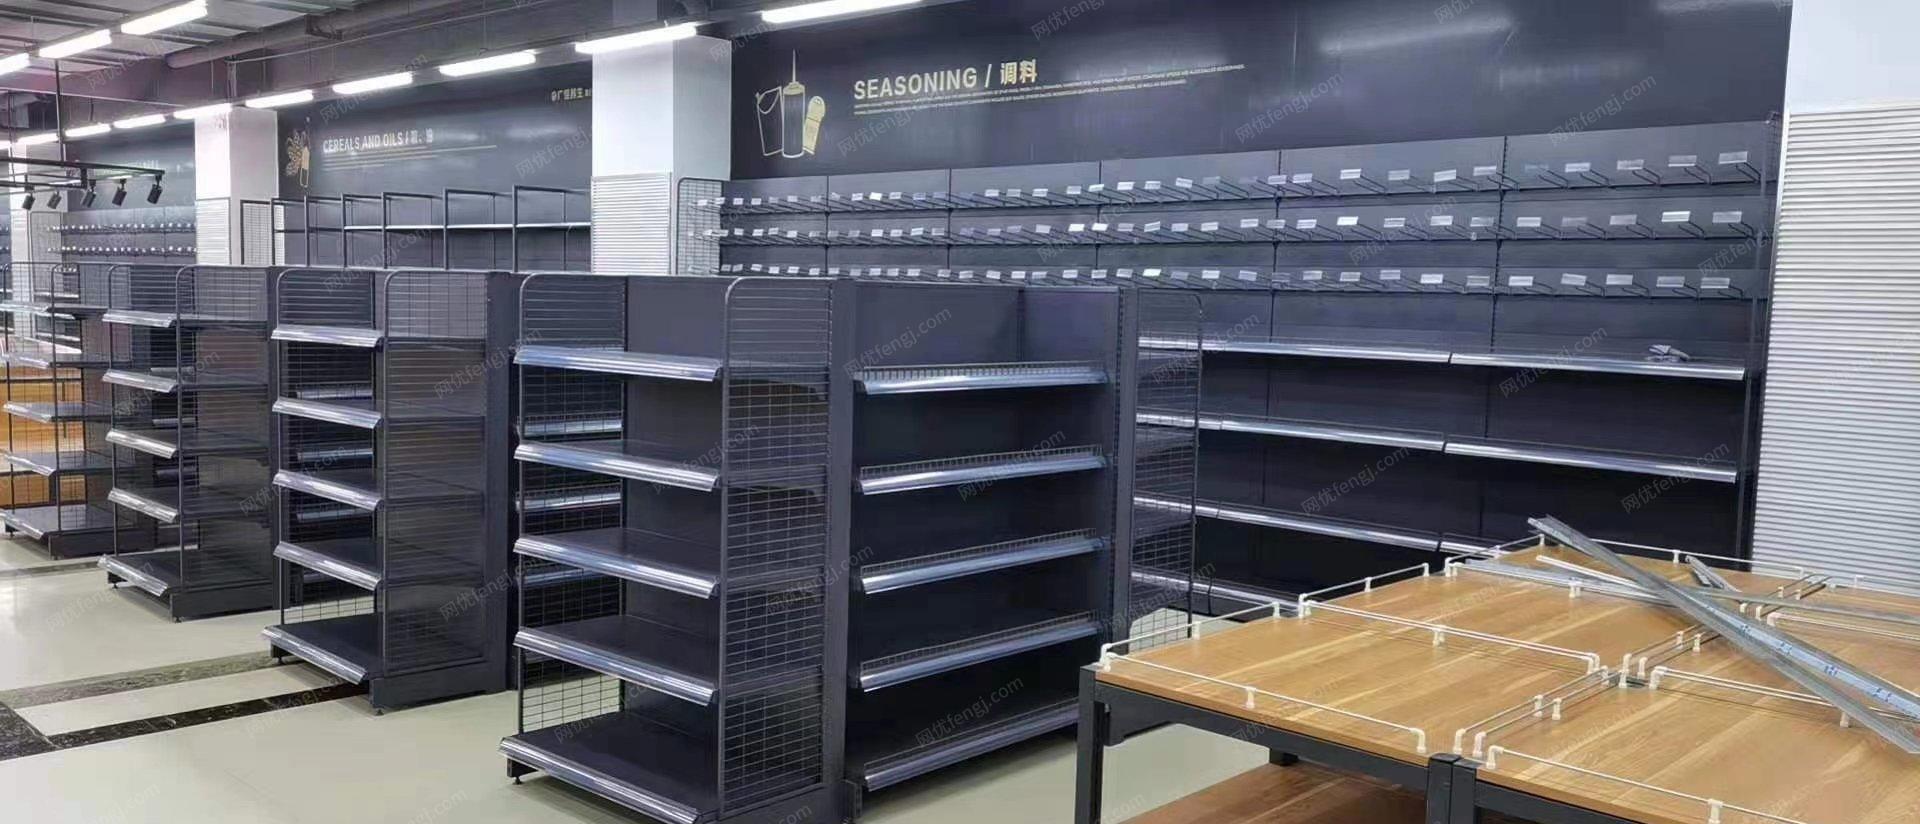 低价处理一批超市货架展示柜置物架仓储货架家用货架厦门货架多层置物架